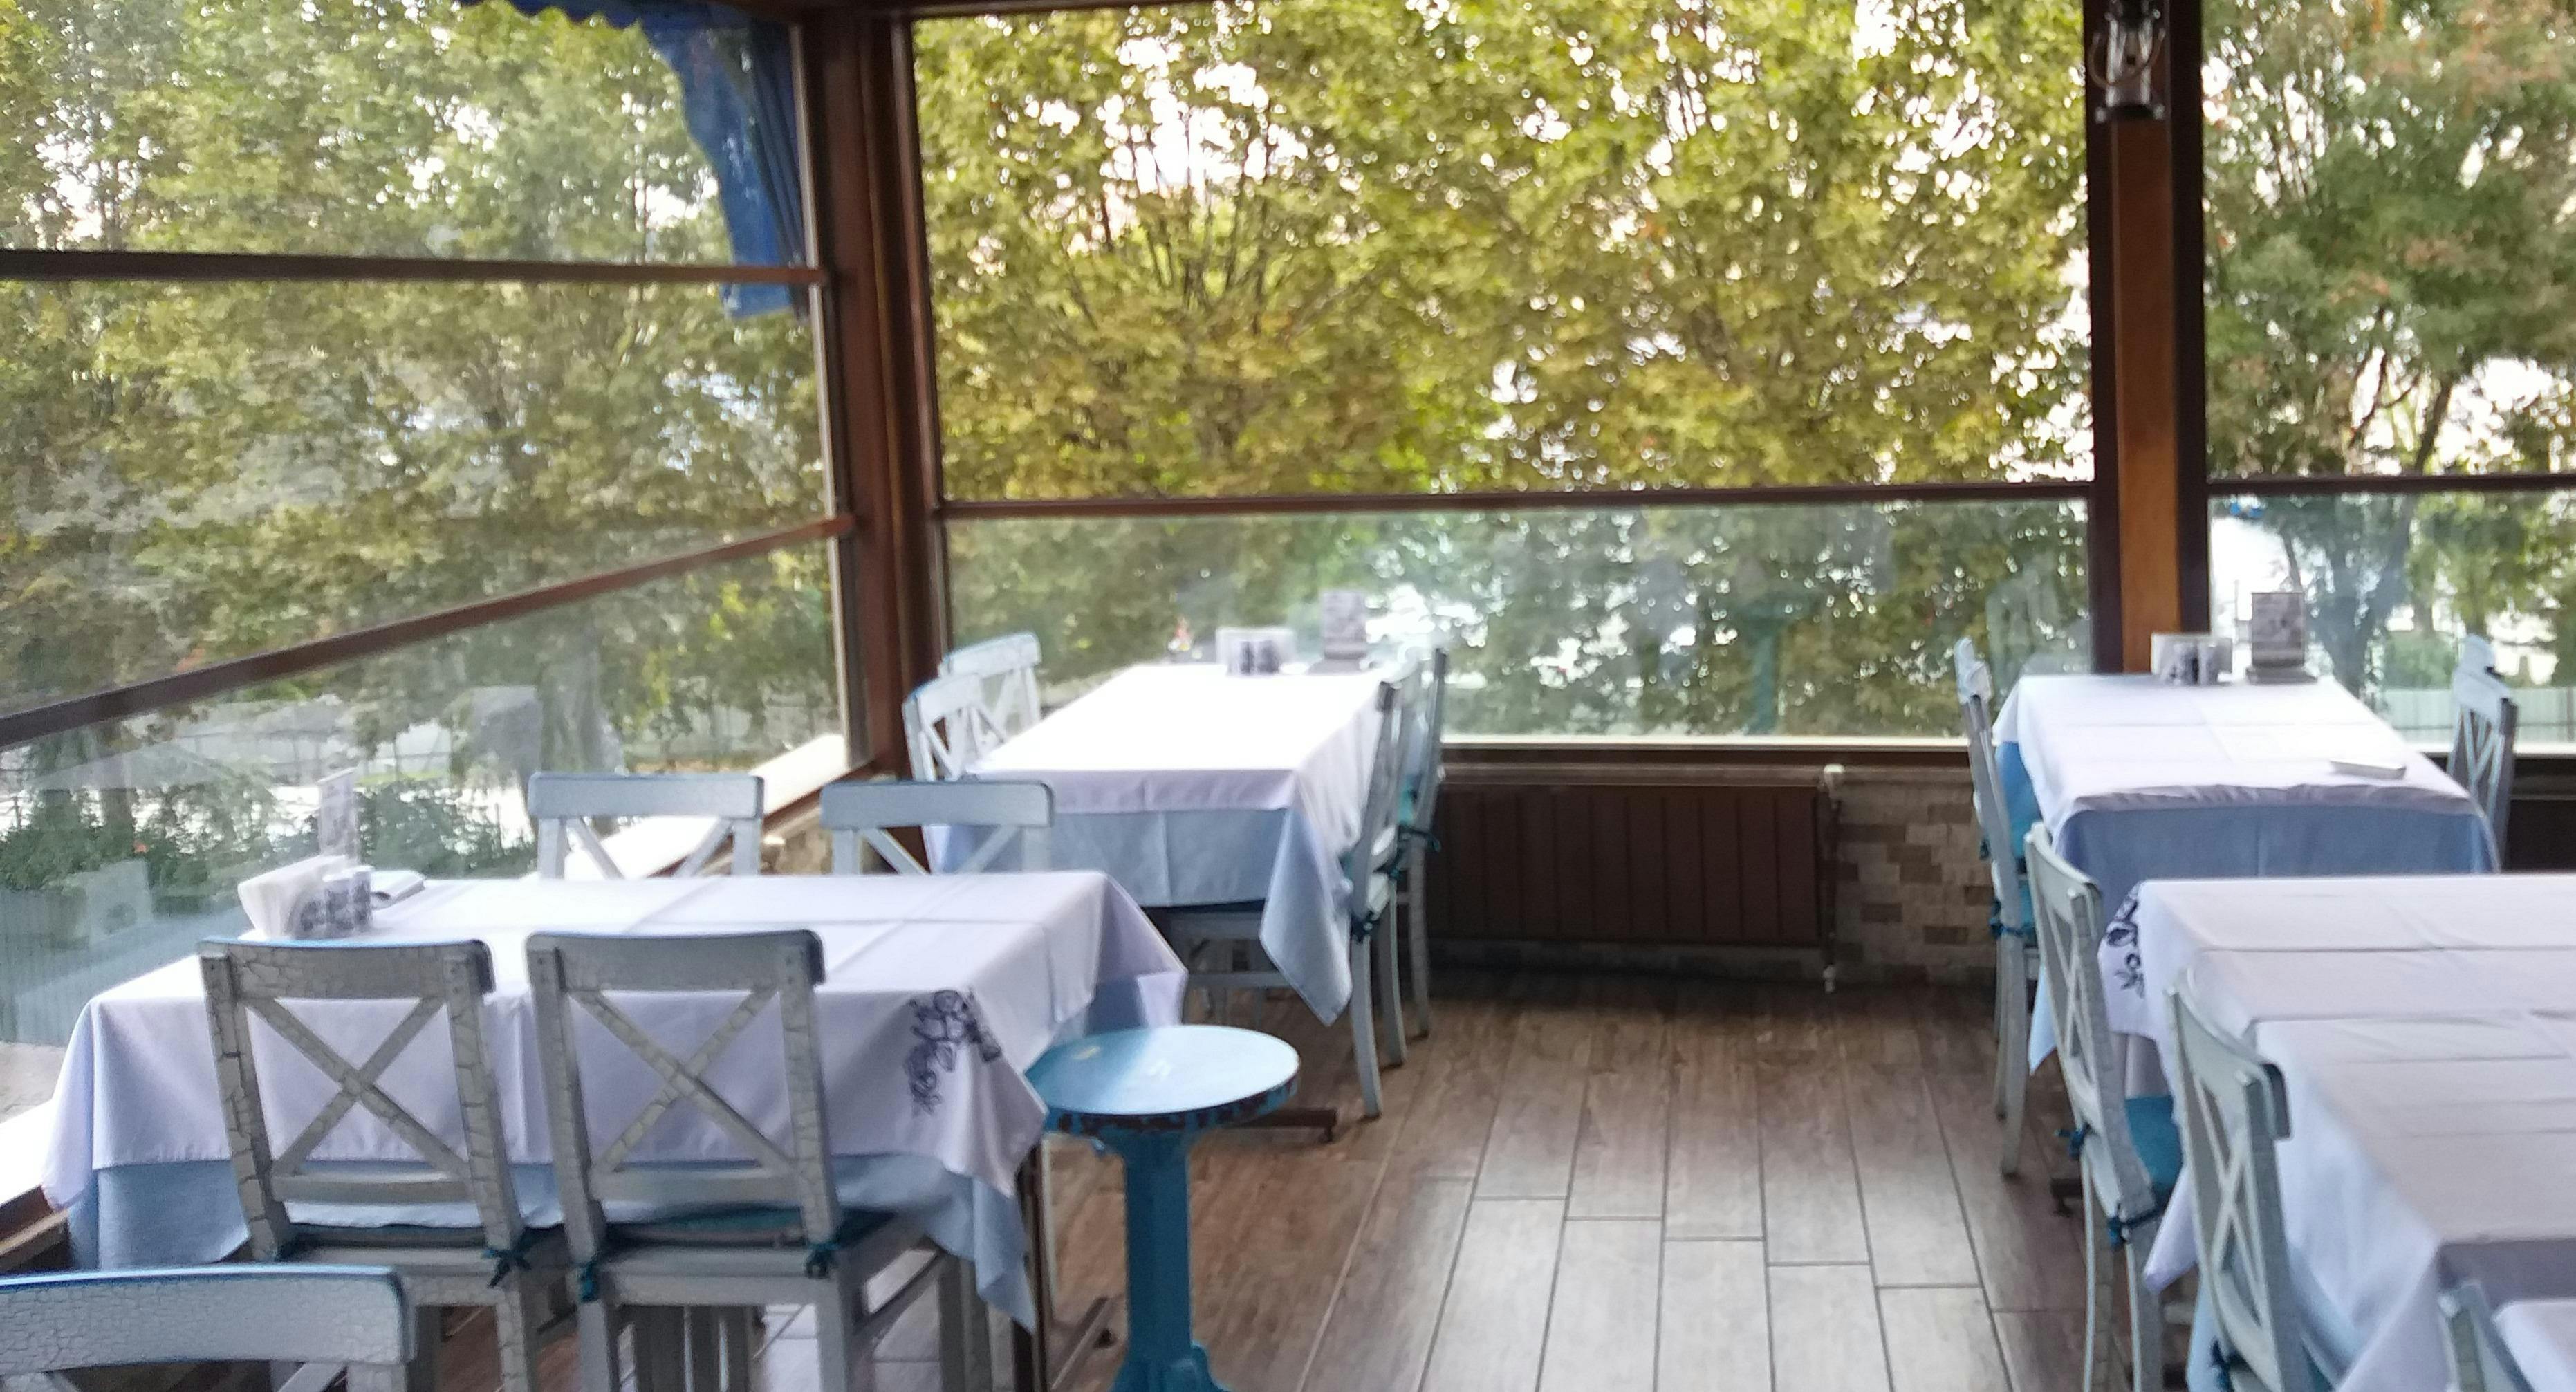 Photo of restaurant Cibali Vasilis Balıkçısı in Fatih, Istanbul